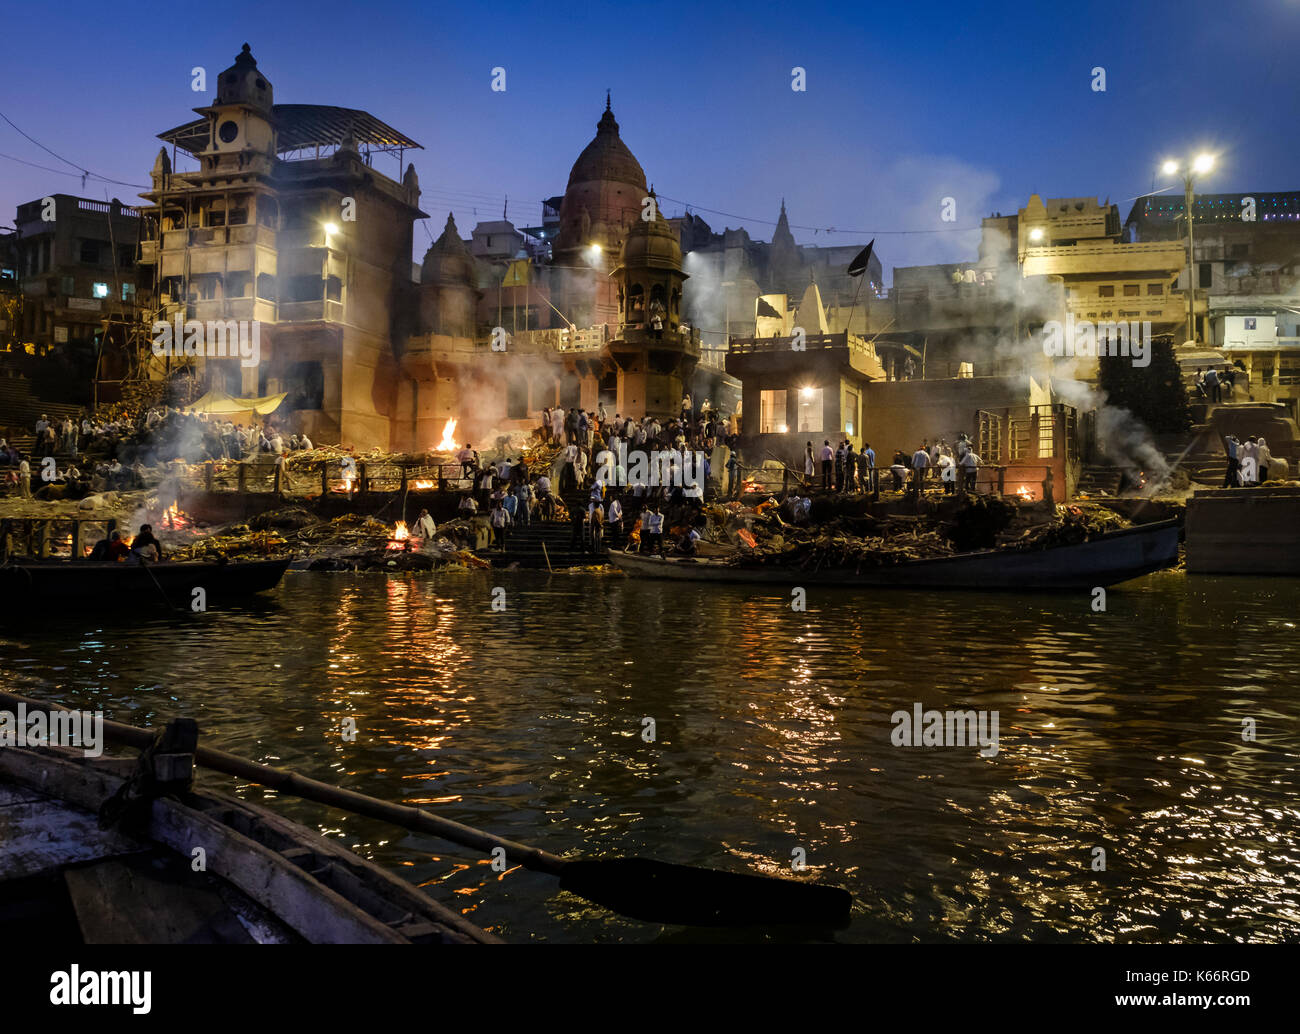 VARANASI, INDIEN - ca. November 2016: Die einäscherung in Fortschritt am Manikarnika Ghat. Dies ist eine der ältesten Ghats in Varanasi, und den meisten bekannten fo Stockfoto